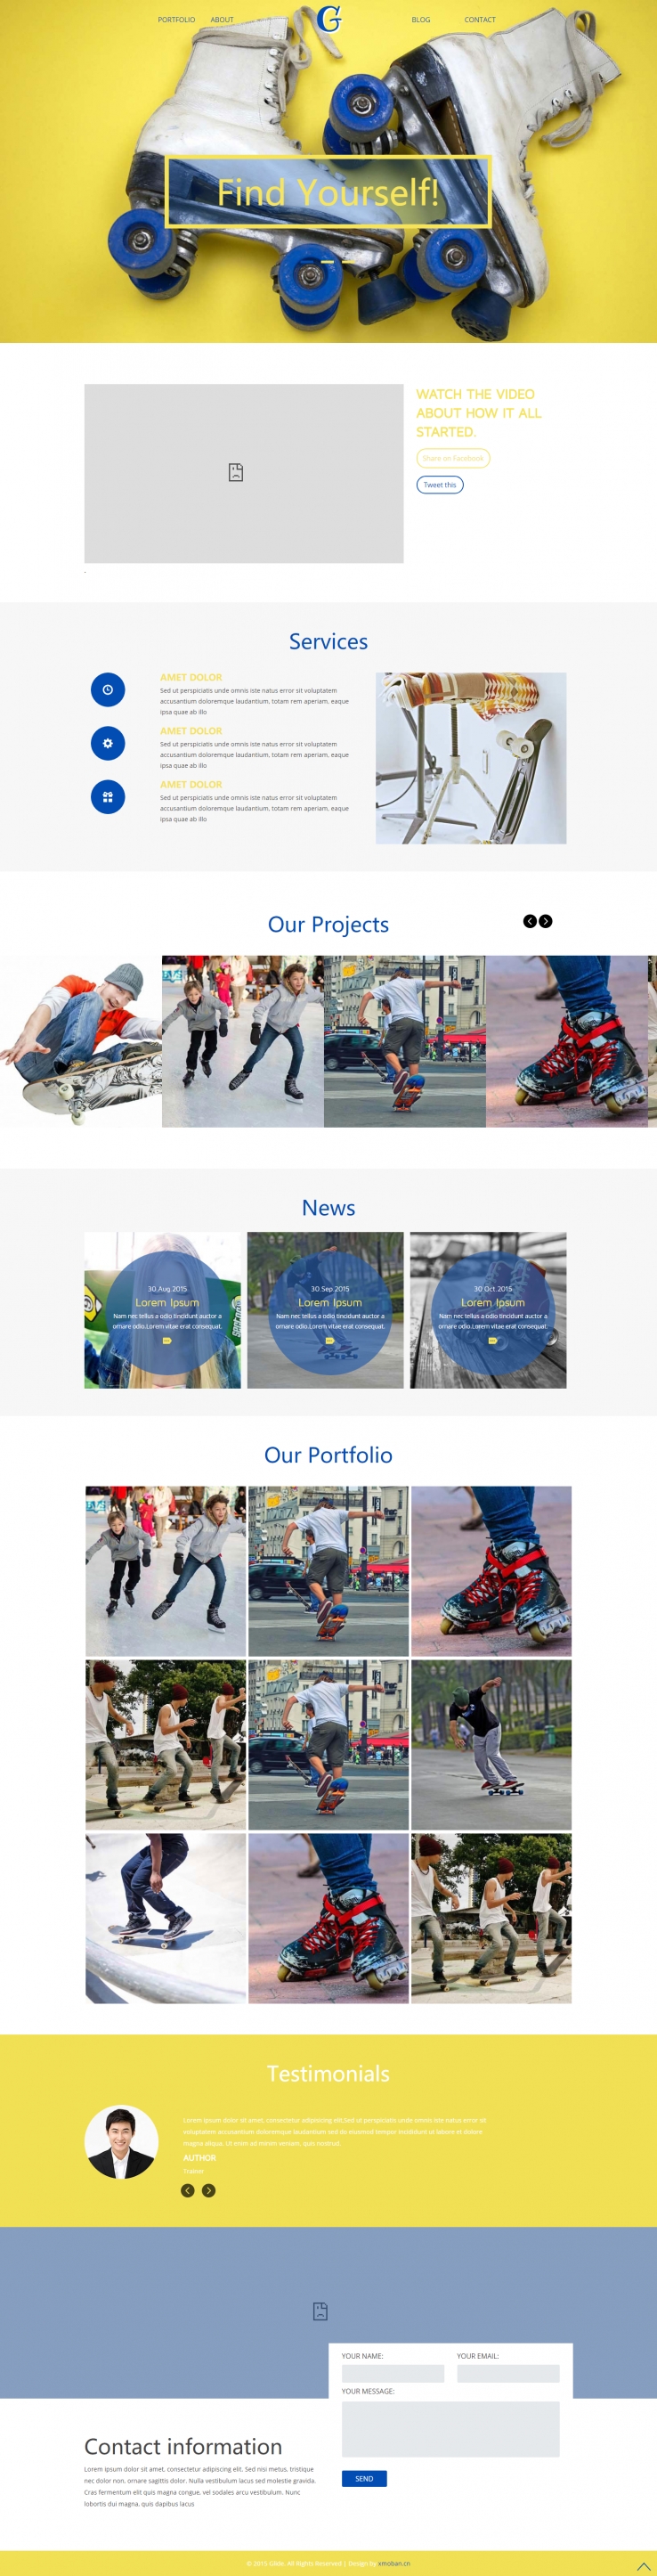 蓝色简洁风格的滑板运动企业网站源码下载